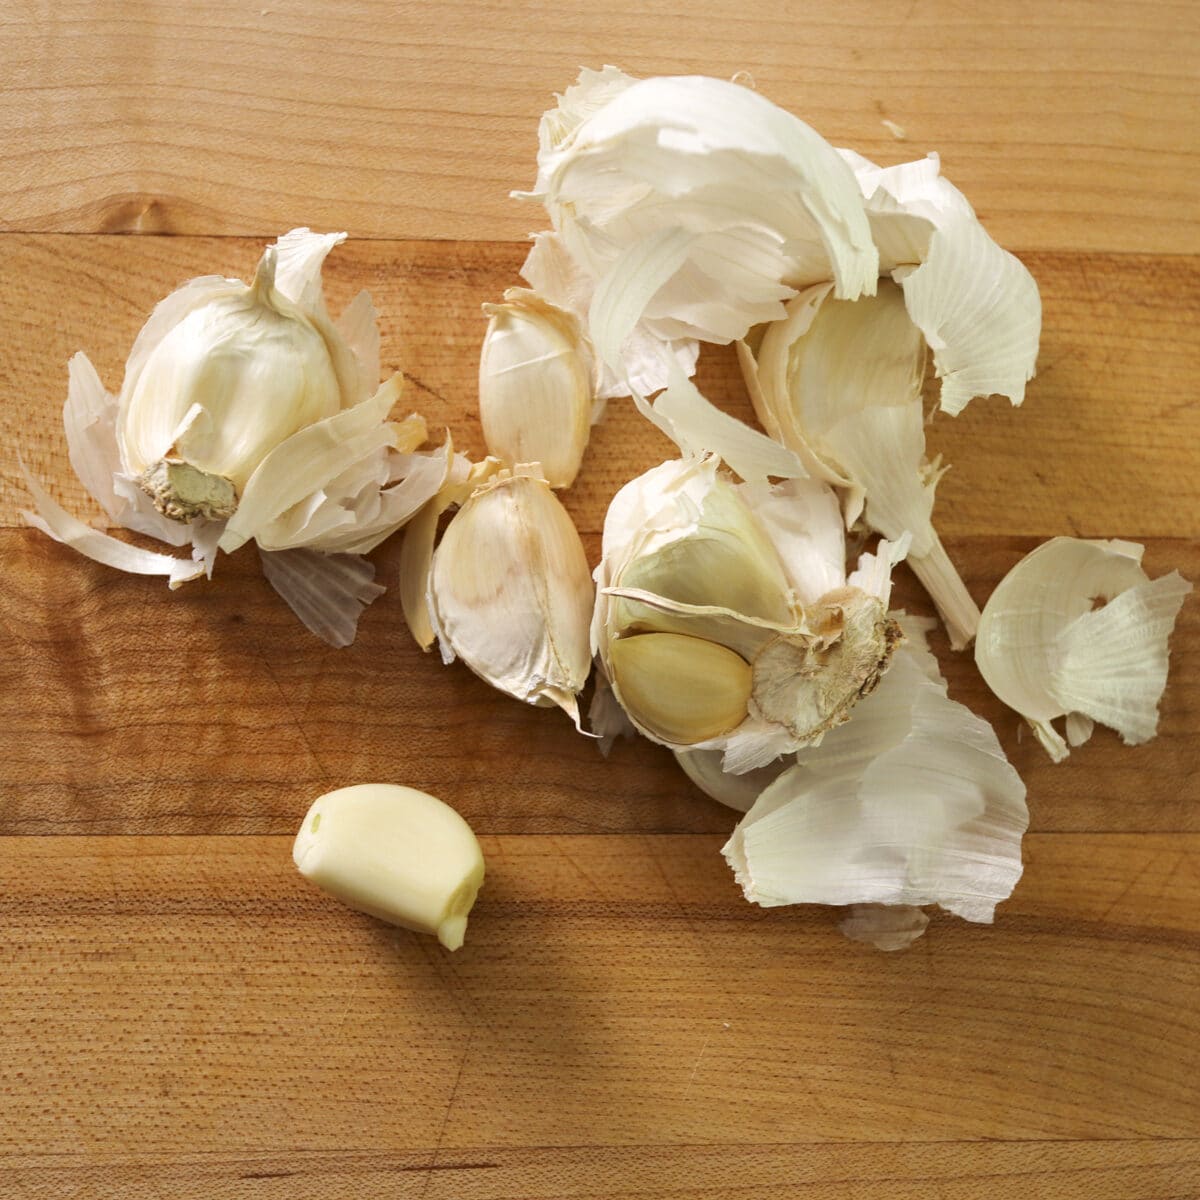 peeled garlic on a cutting board